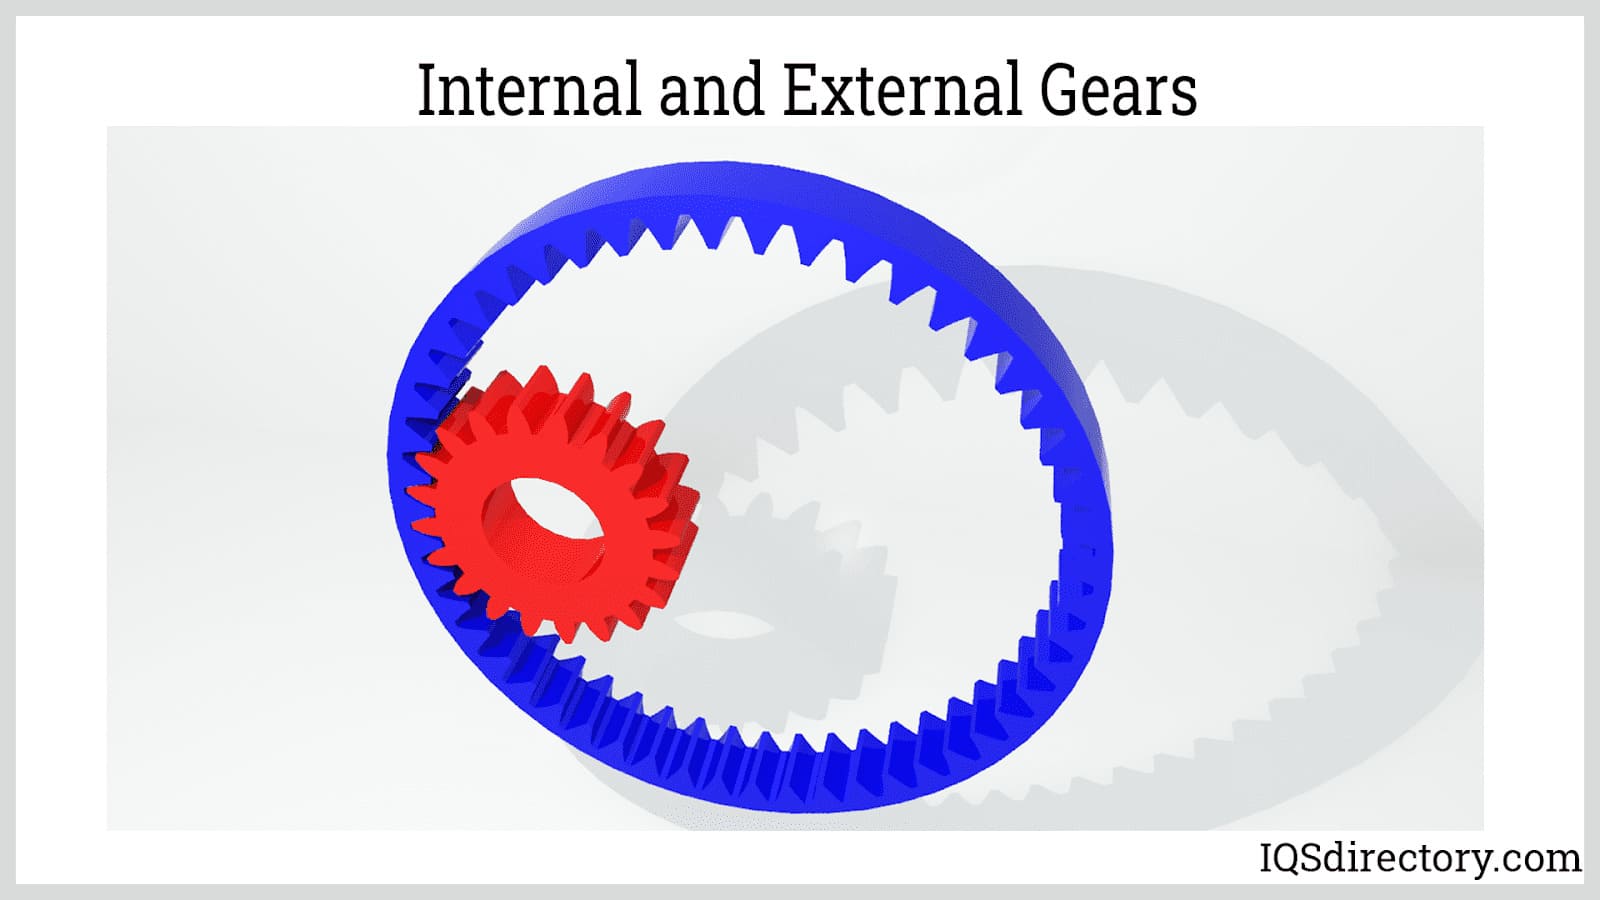 Internal and External Gears